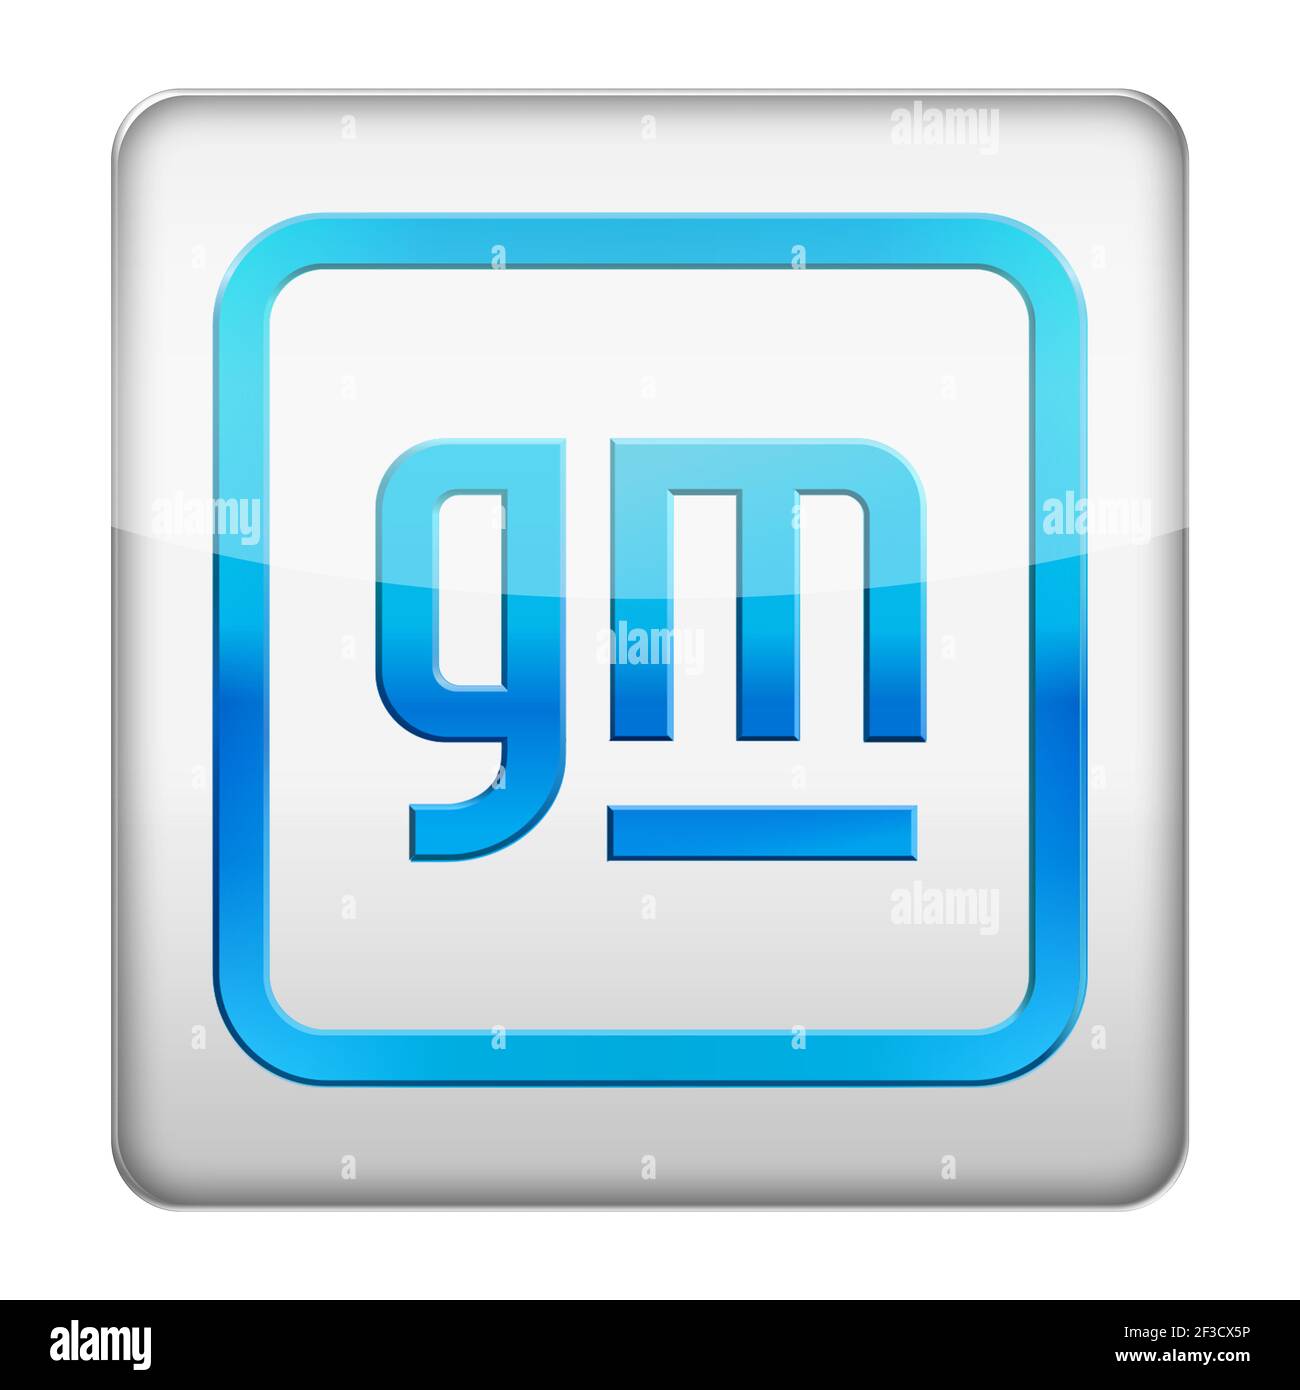 General Motors logo Stock Photo